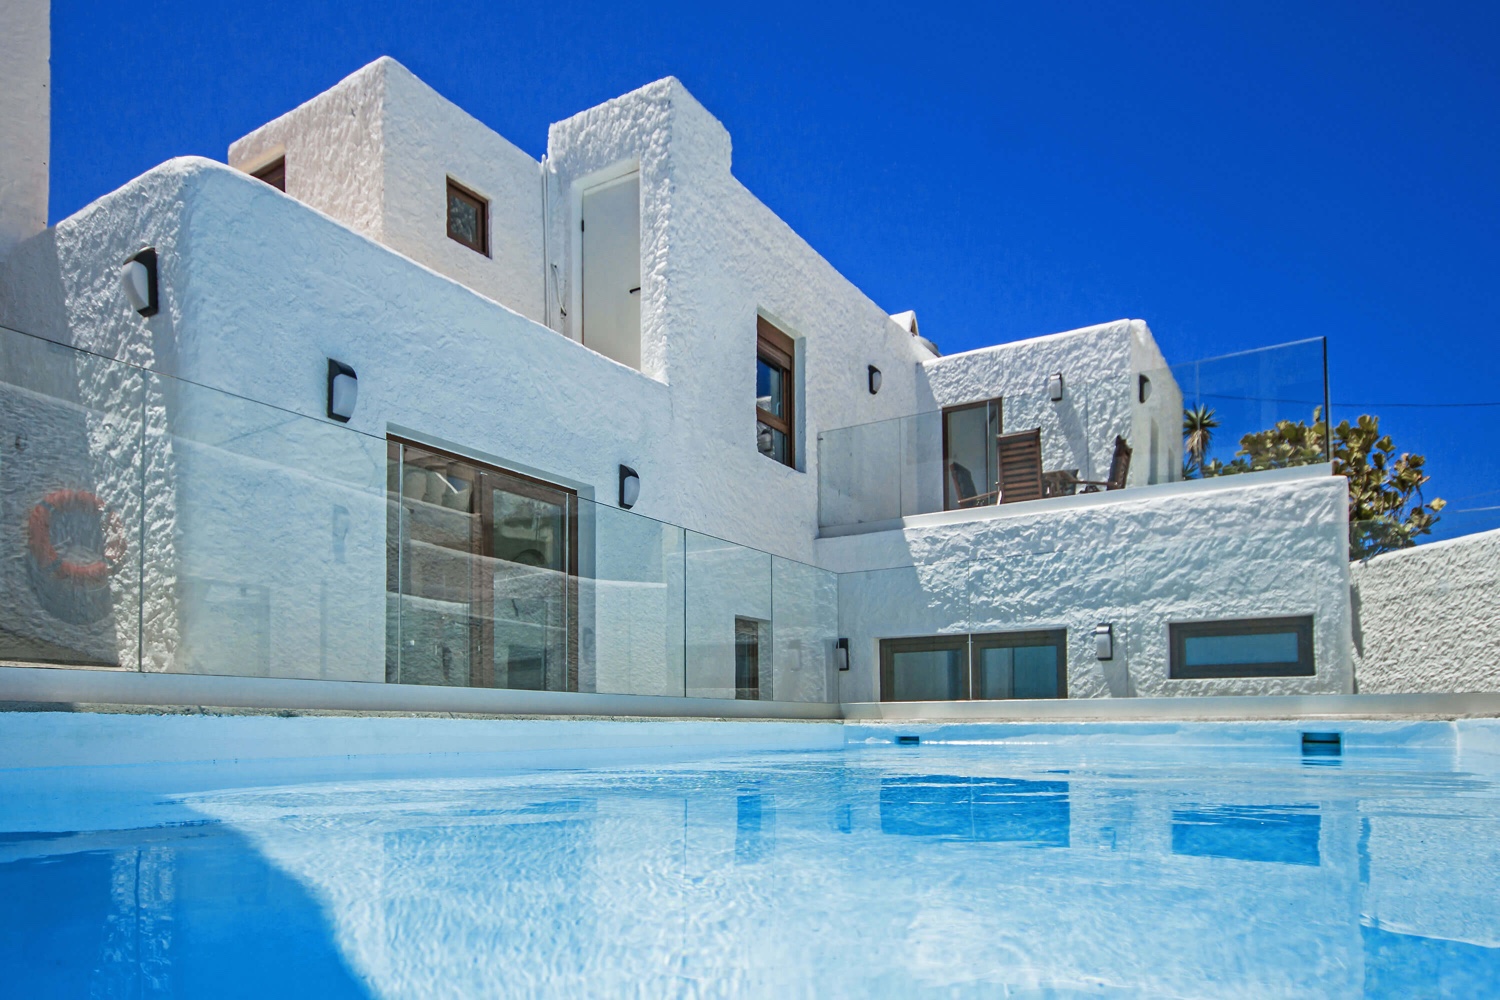 Gemütliches Haus im kanarischen Stil, geschmackvoll eingerichtet, mit privatem Pool und ganz in der Nähe des Meeres.